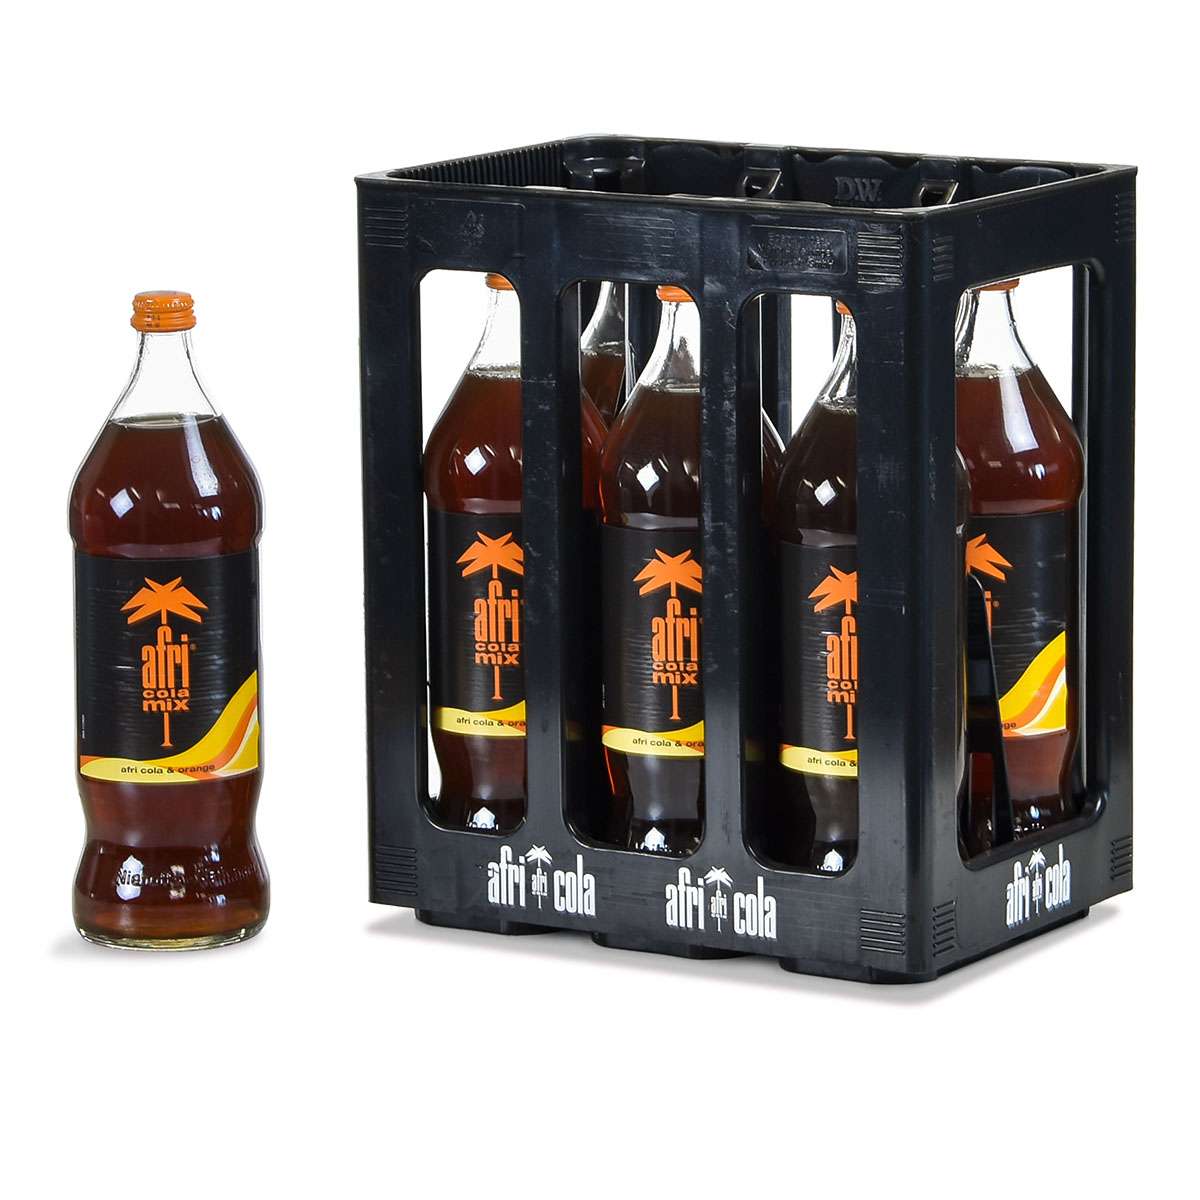 Afri Cola Mix (Cola + Lemonade) - Refreshing African Taste Meets